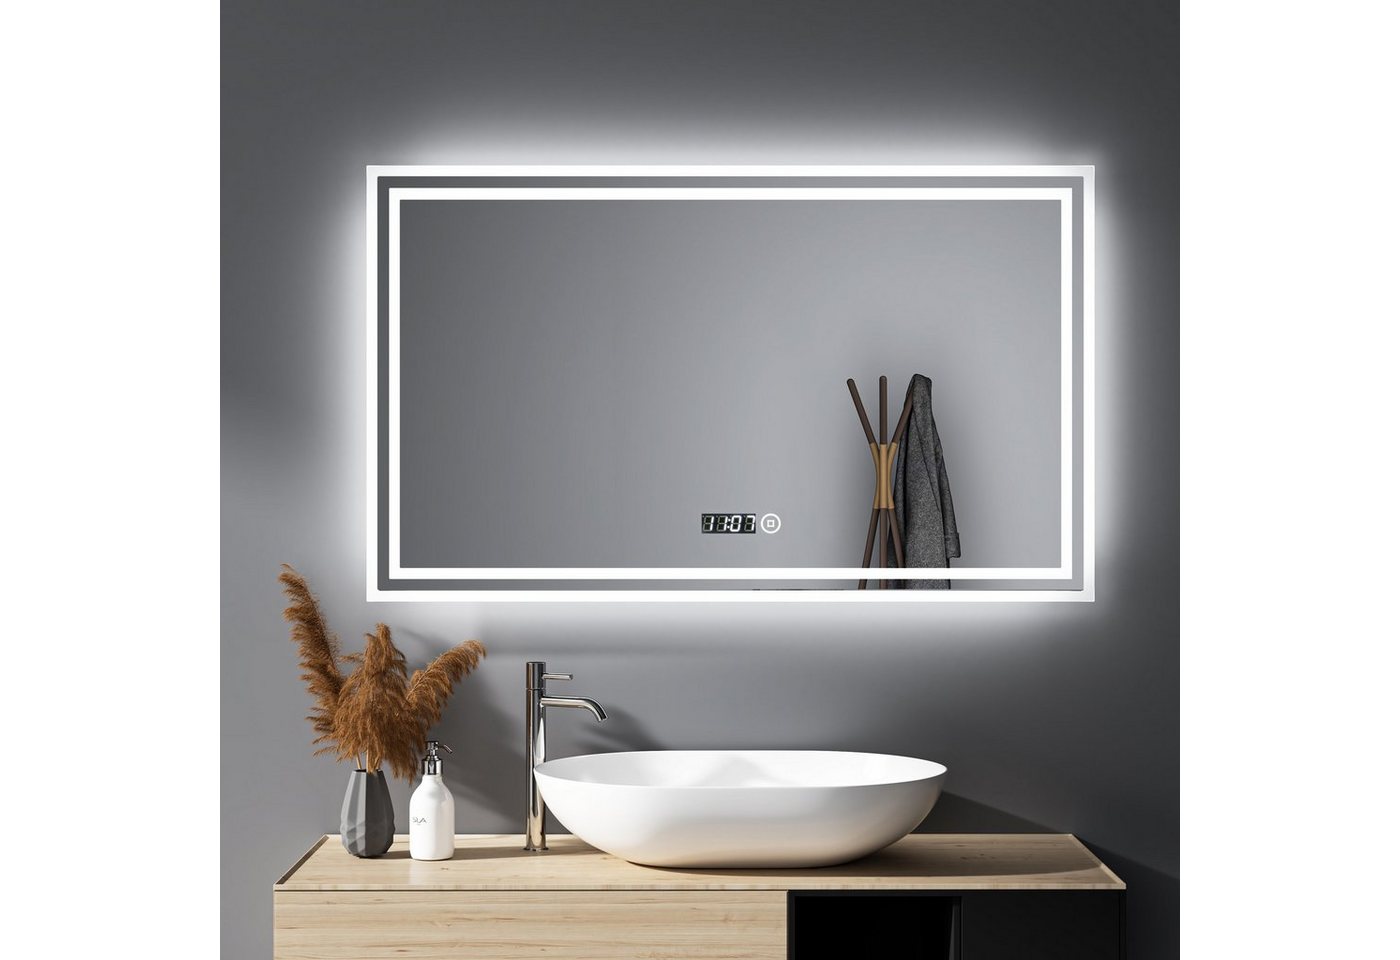 WDWRITTI Spiegel Led Badspiegel 100x60 mit Uhr Touch Dimmbar Kalt/Neutral/Warmweiß (Speicherfunktion, IP44), Wandschalter auswählbar von WDWRITTI